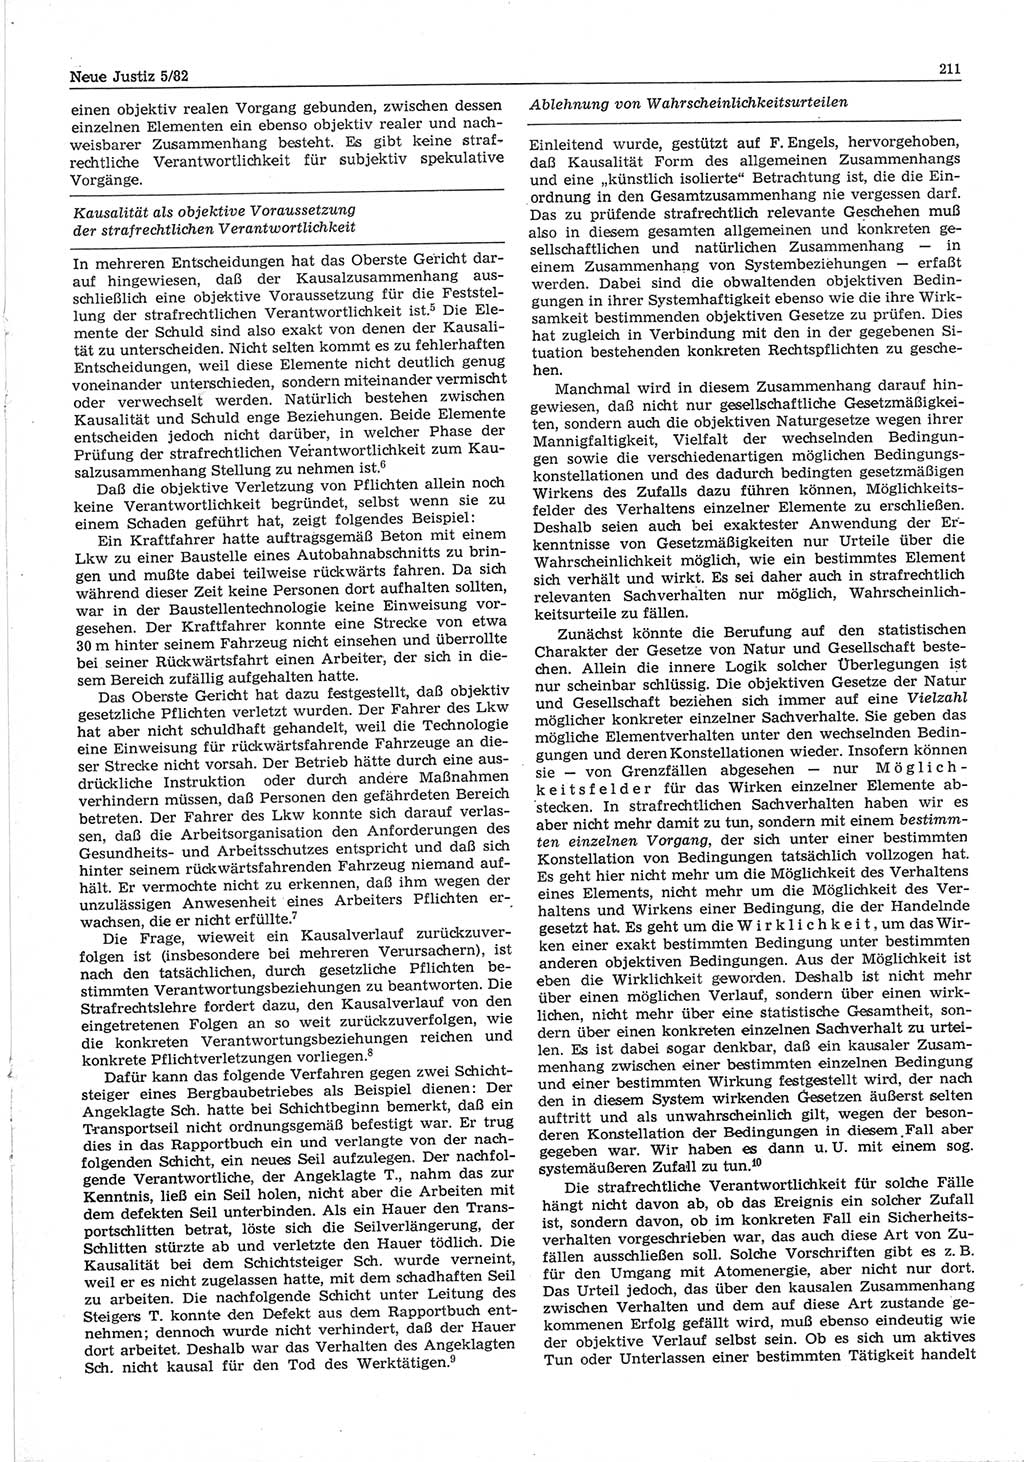 Neue Justiz (NJ), Zeitschrift für sozialistisches Recht und Gesetzlichkeit [Deutsche Demokratische Republik (DDR)], 36. Jahrgang 1982, Seite 211 (NJ DDR 1982, S. 211)